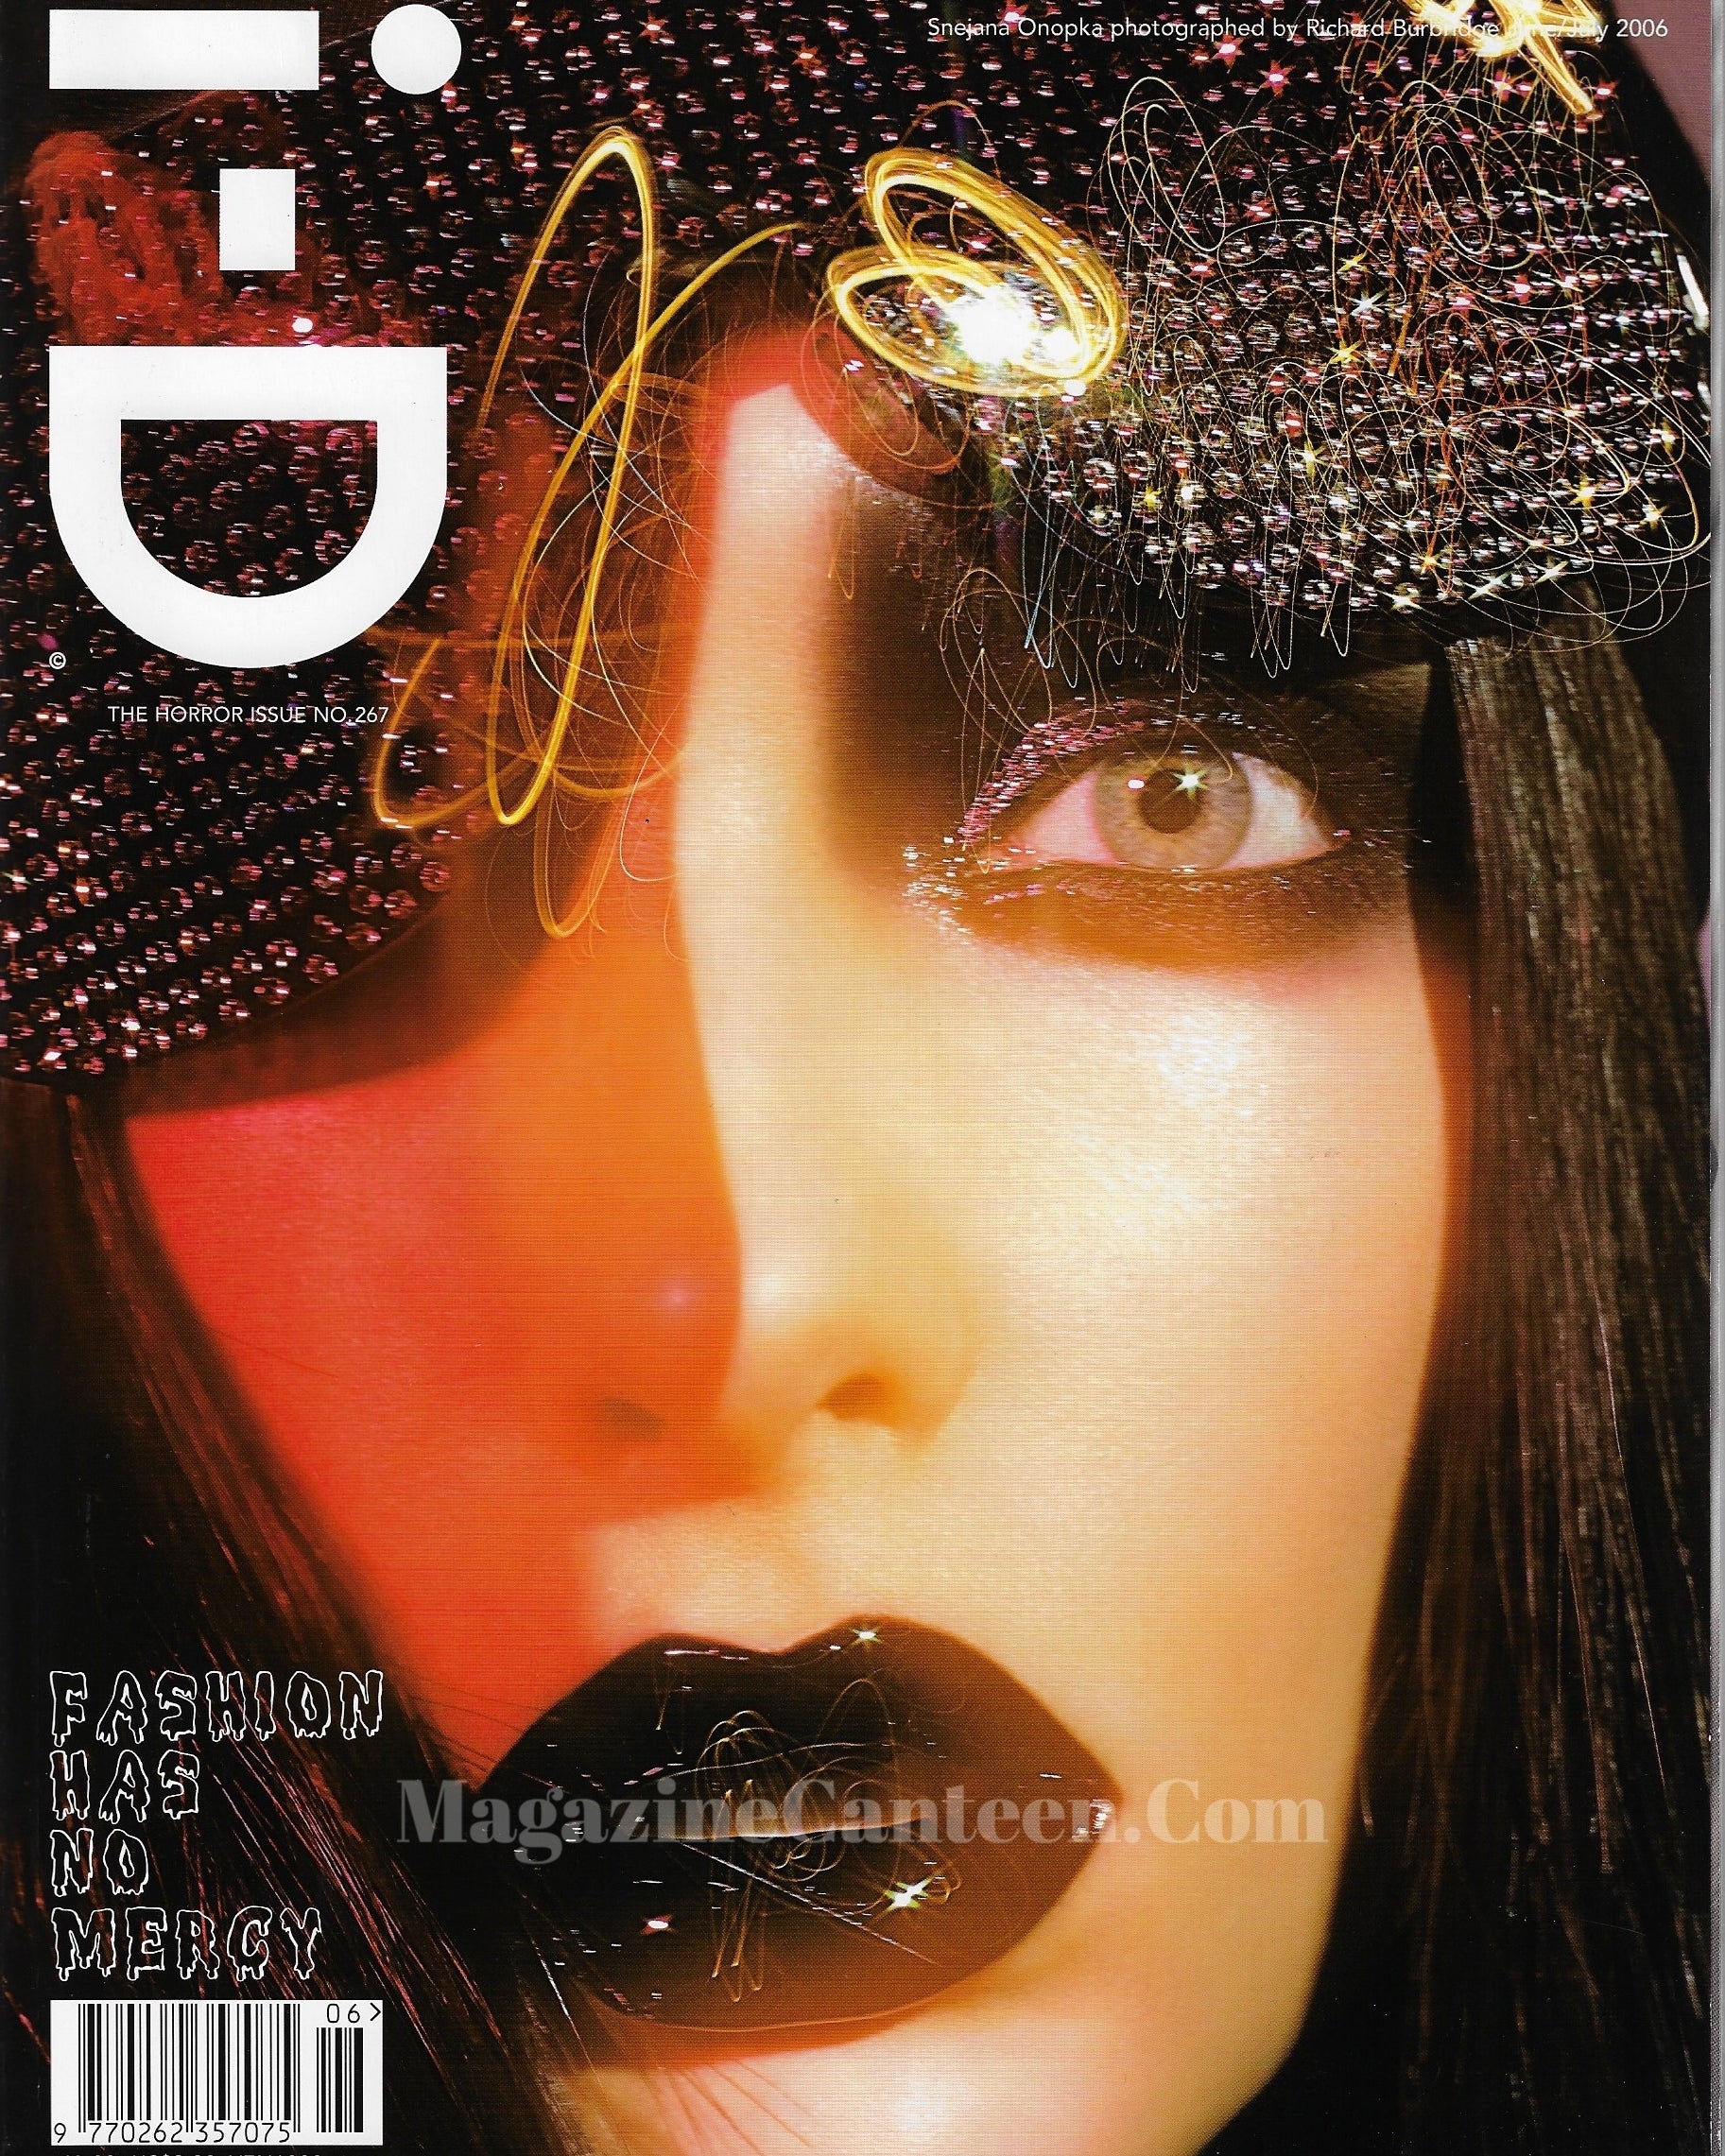 I-D Magazine 267 - Snejana 2006